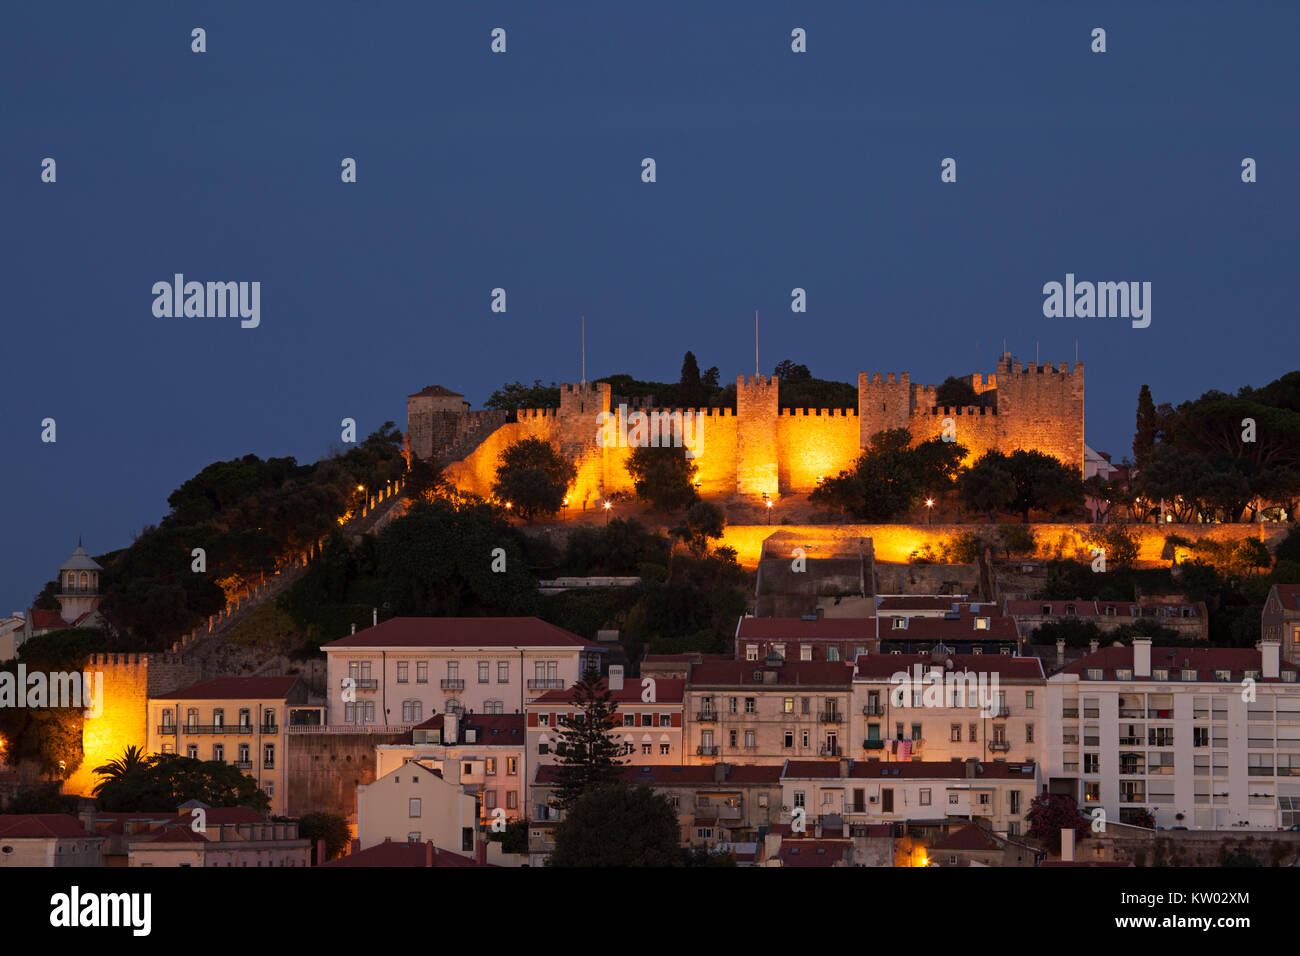 Le Château de St George (Castelo de São Jorge) à Lisbonne, Portugal. La forteresse perchée date de l'époque médiévale et est éclairé la nuit. Banque D'Images